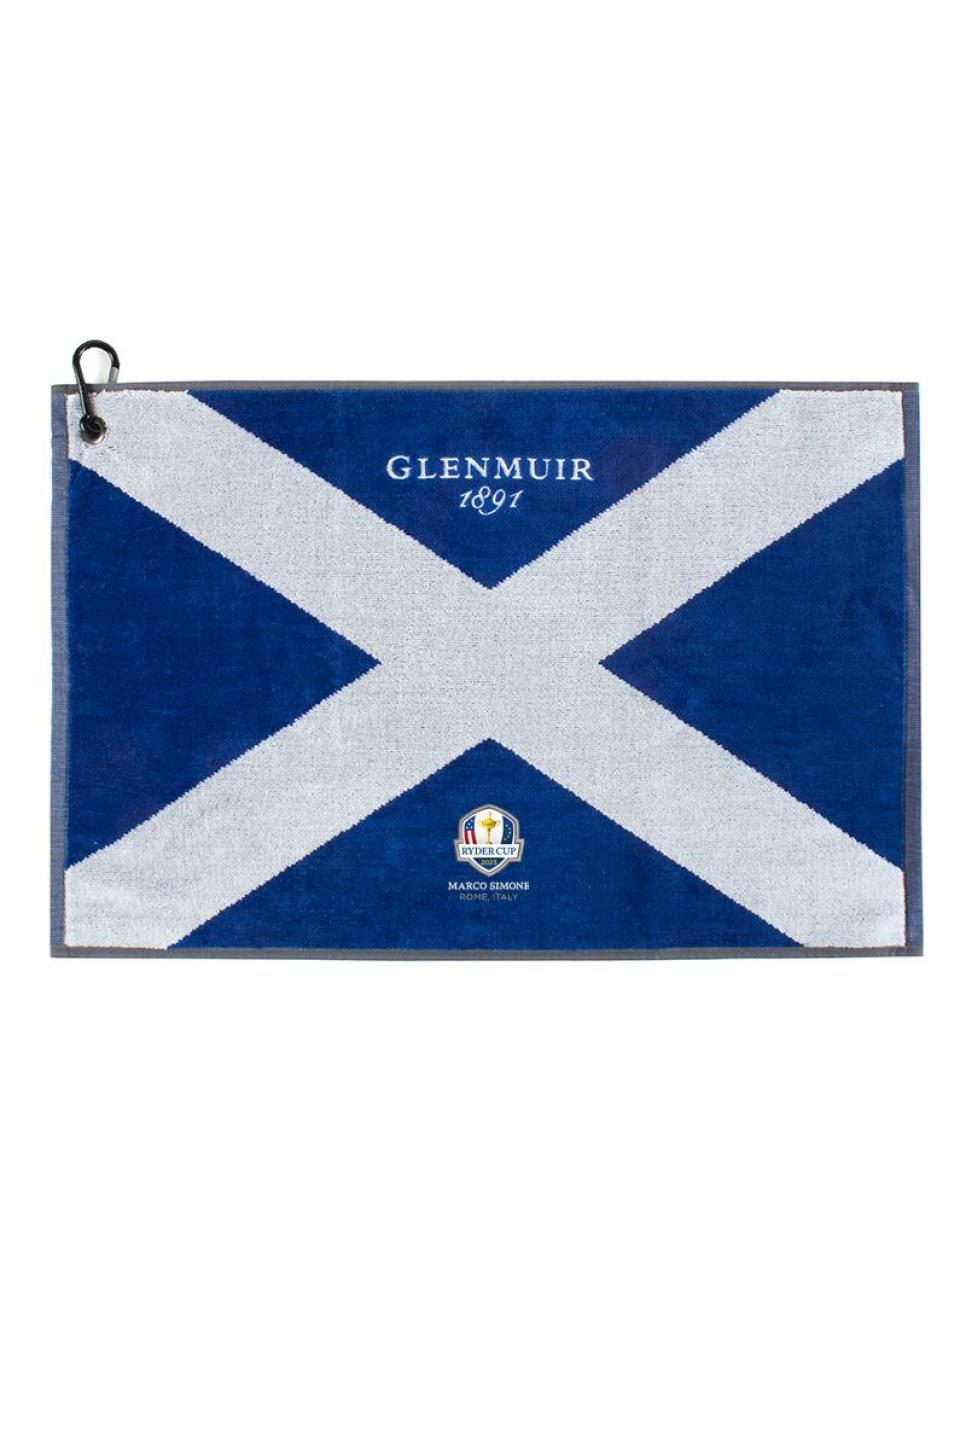 rx-glenmuirglenmuir-official-ryder-cup-2023-saltire-flag-jacquard-cotton-golf-bag-towel.jpeg